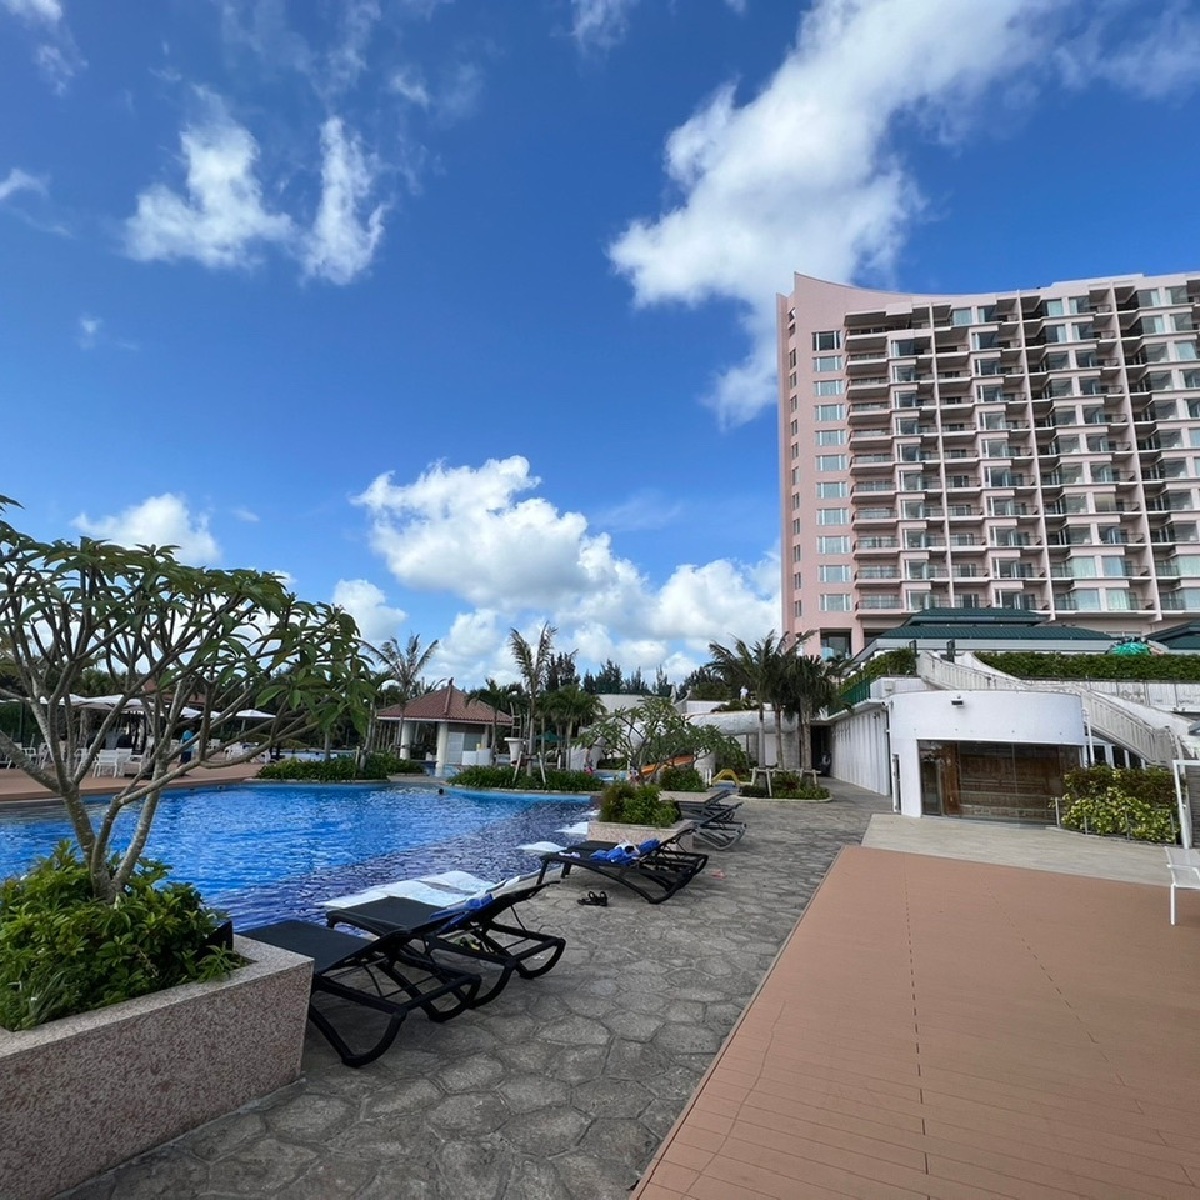 〈オリエンタルホテル 沖縄リゾート&スパ〉極上のオーシャンビューと多彩なアメニティ：オリエンタルホテル沖縄のお部屋レポート